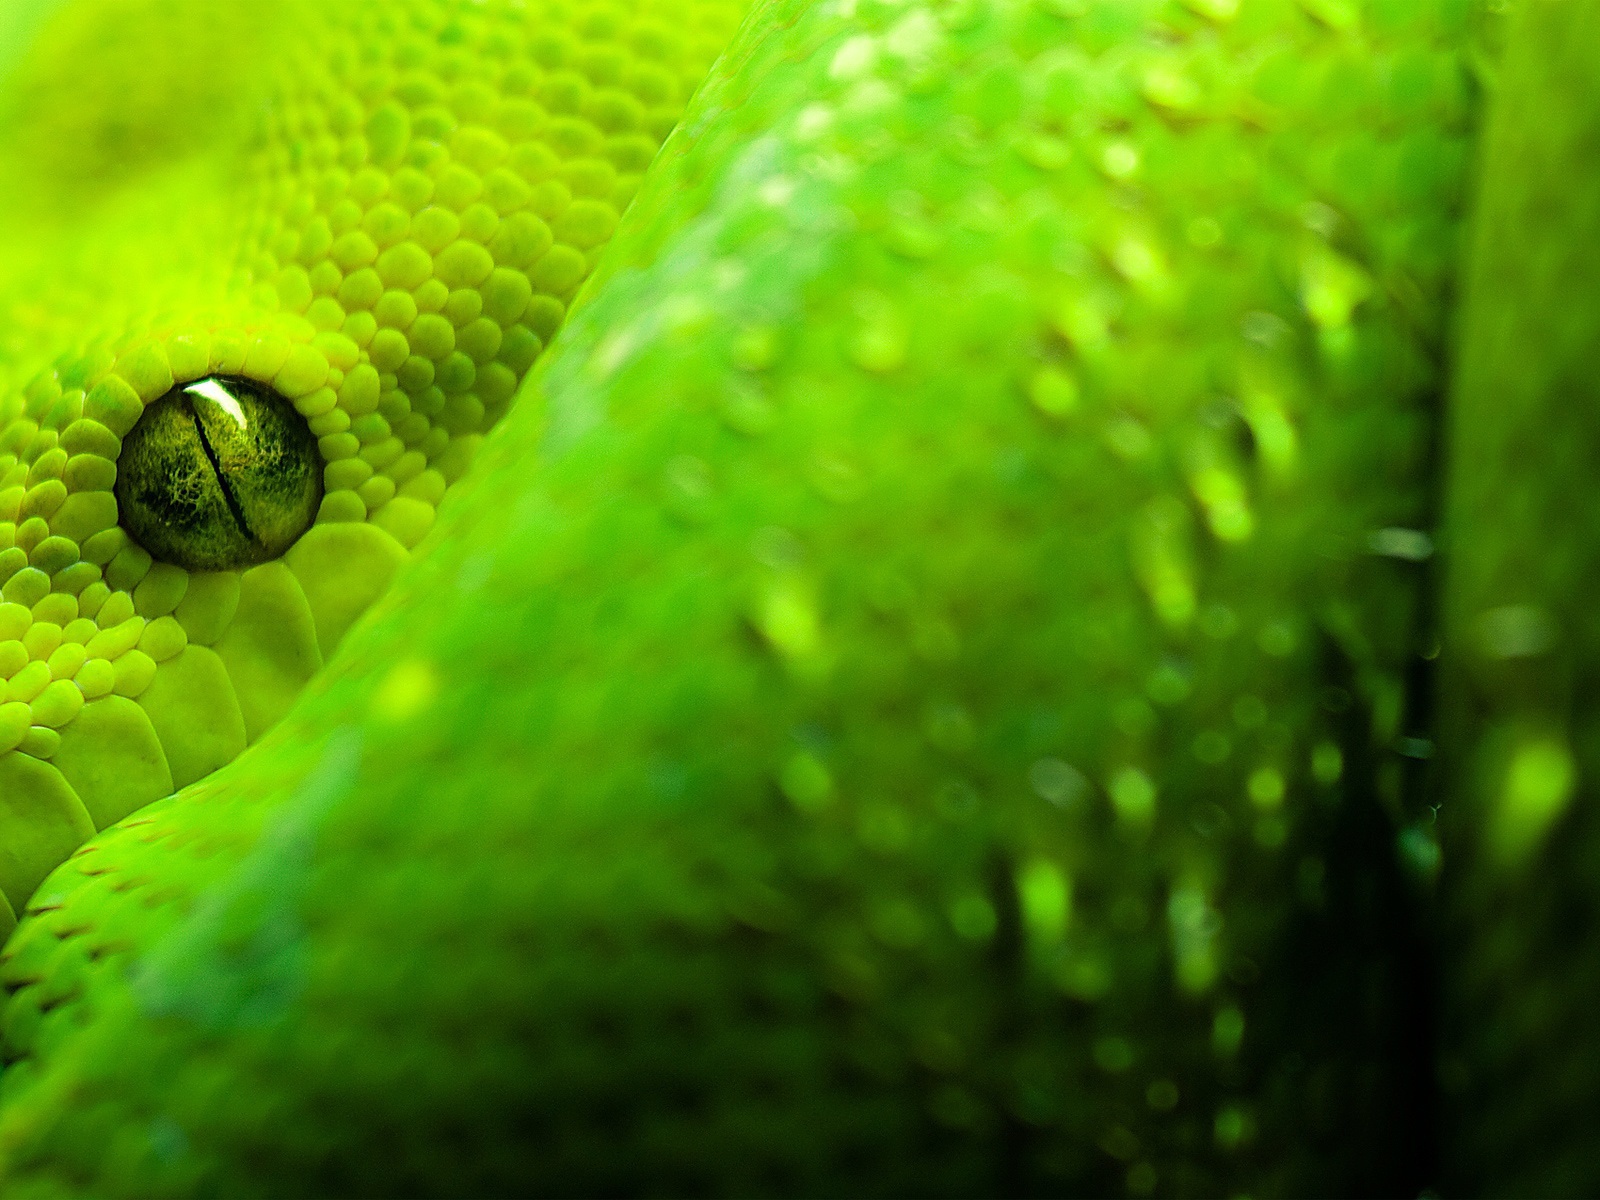 Глаза зеленой змеи